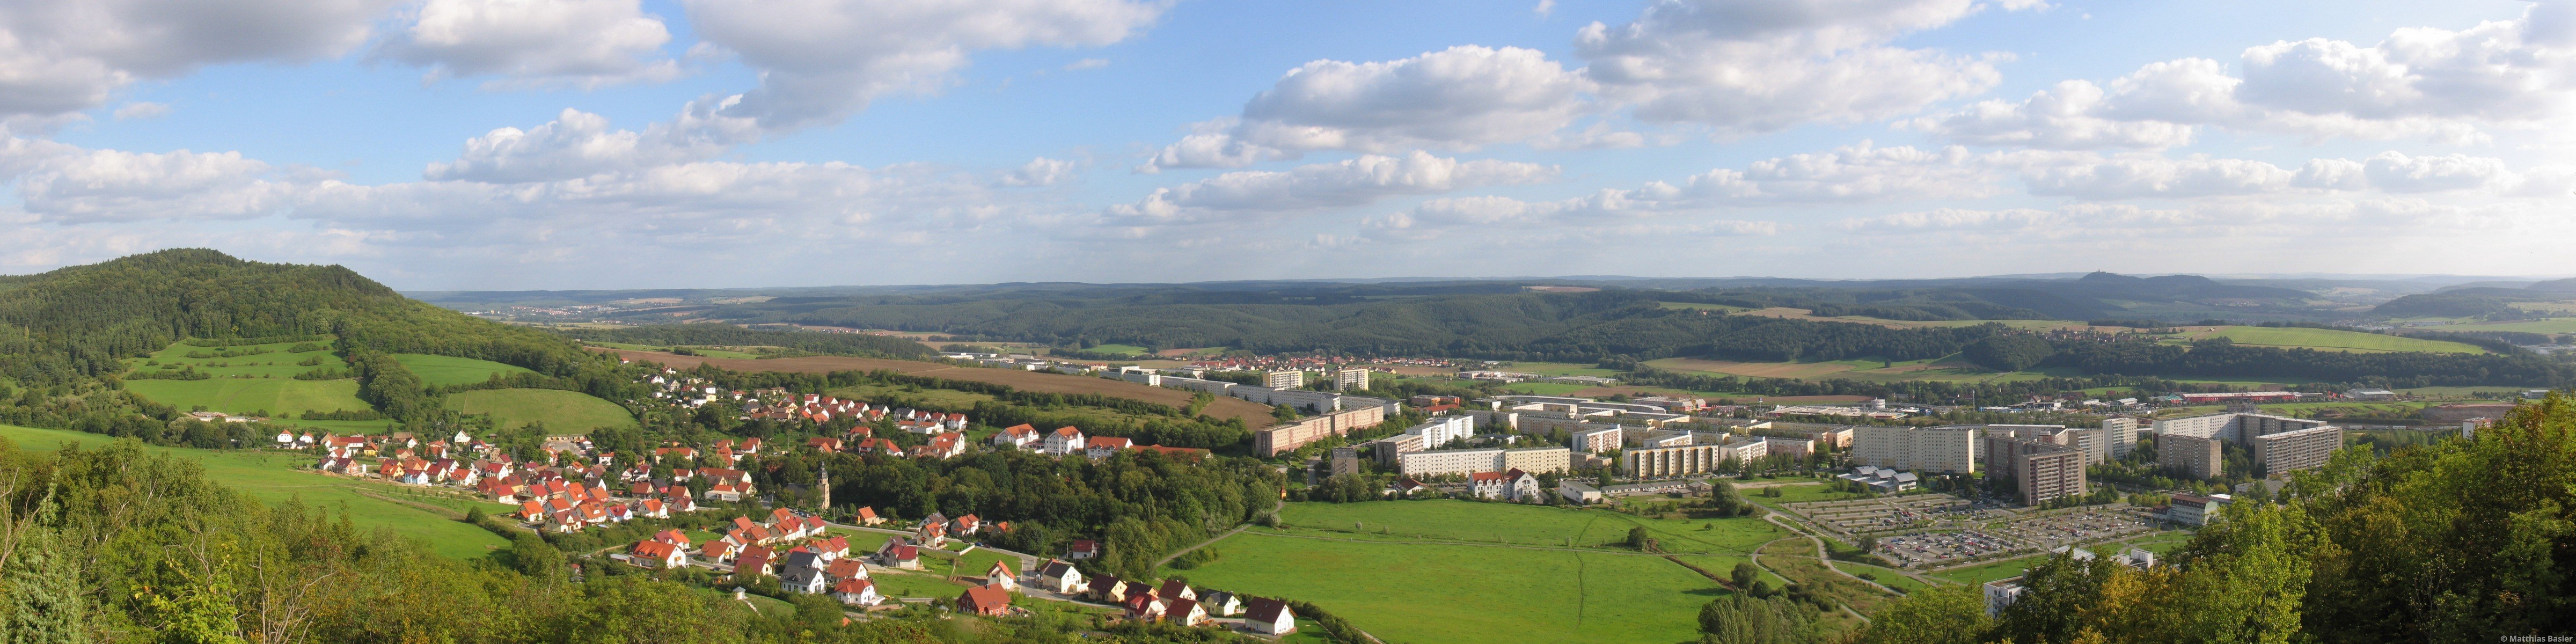 2006 - Panorama von der Lobdeburg